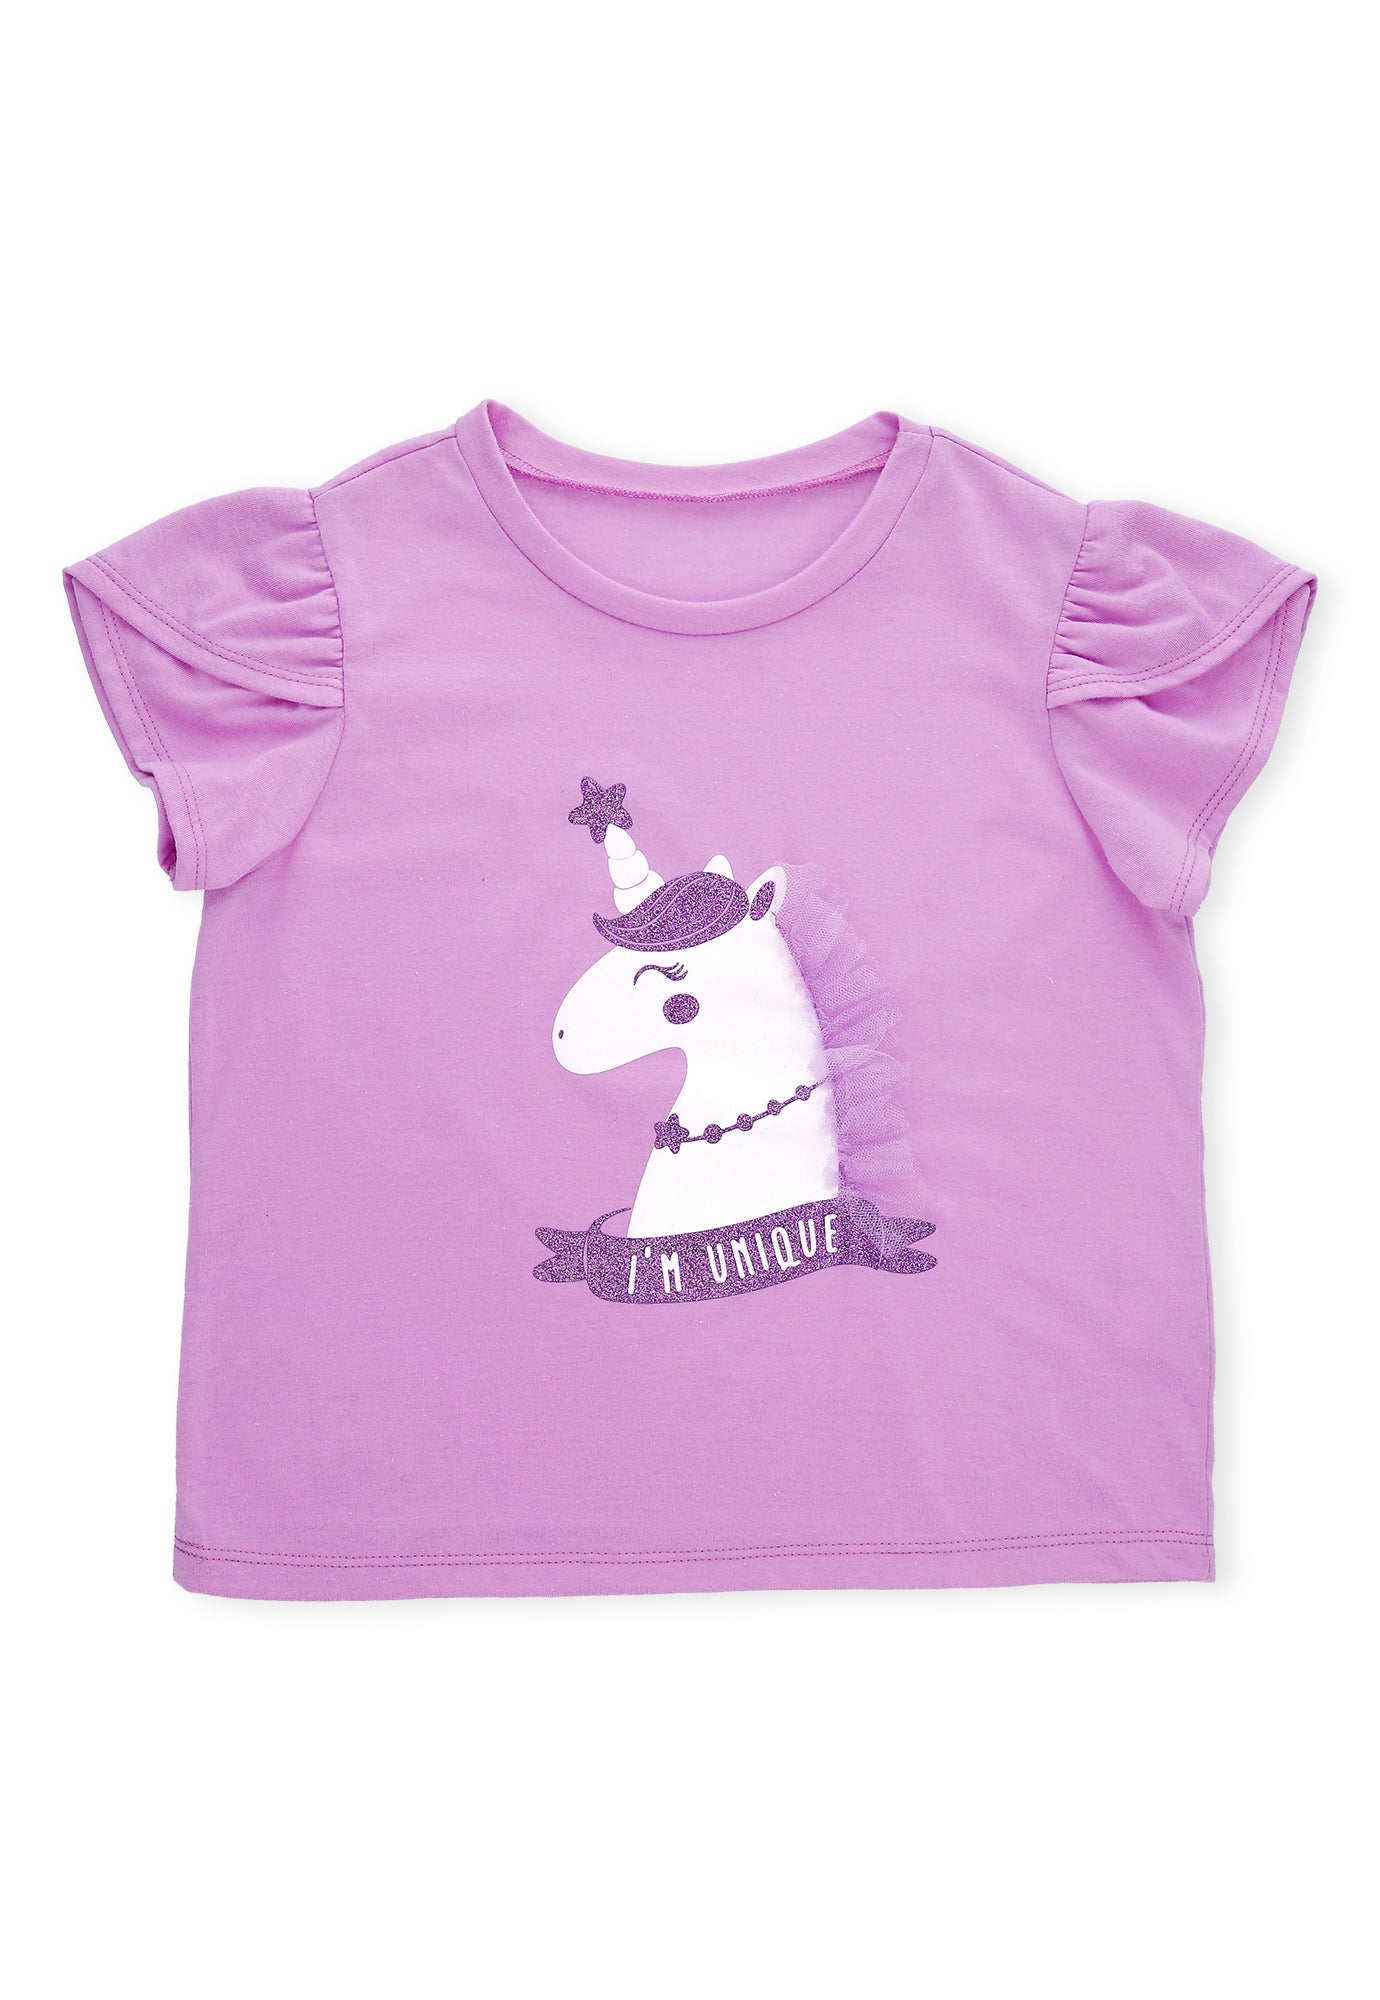 Camiseta lila lavanda con decoración en frente y manga corta cruzada para bebé niña